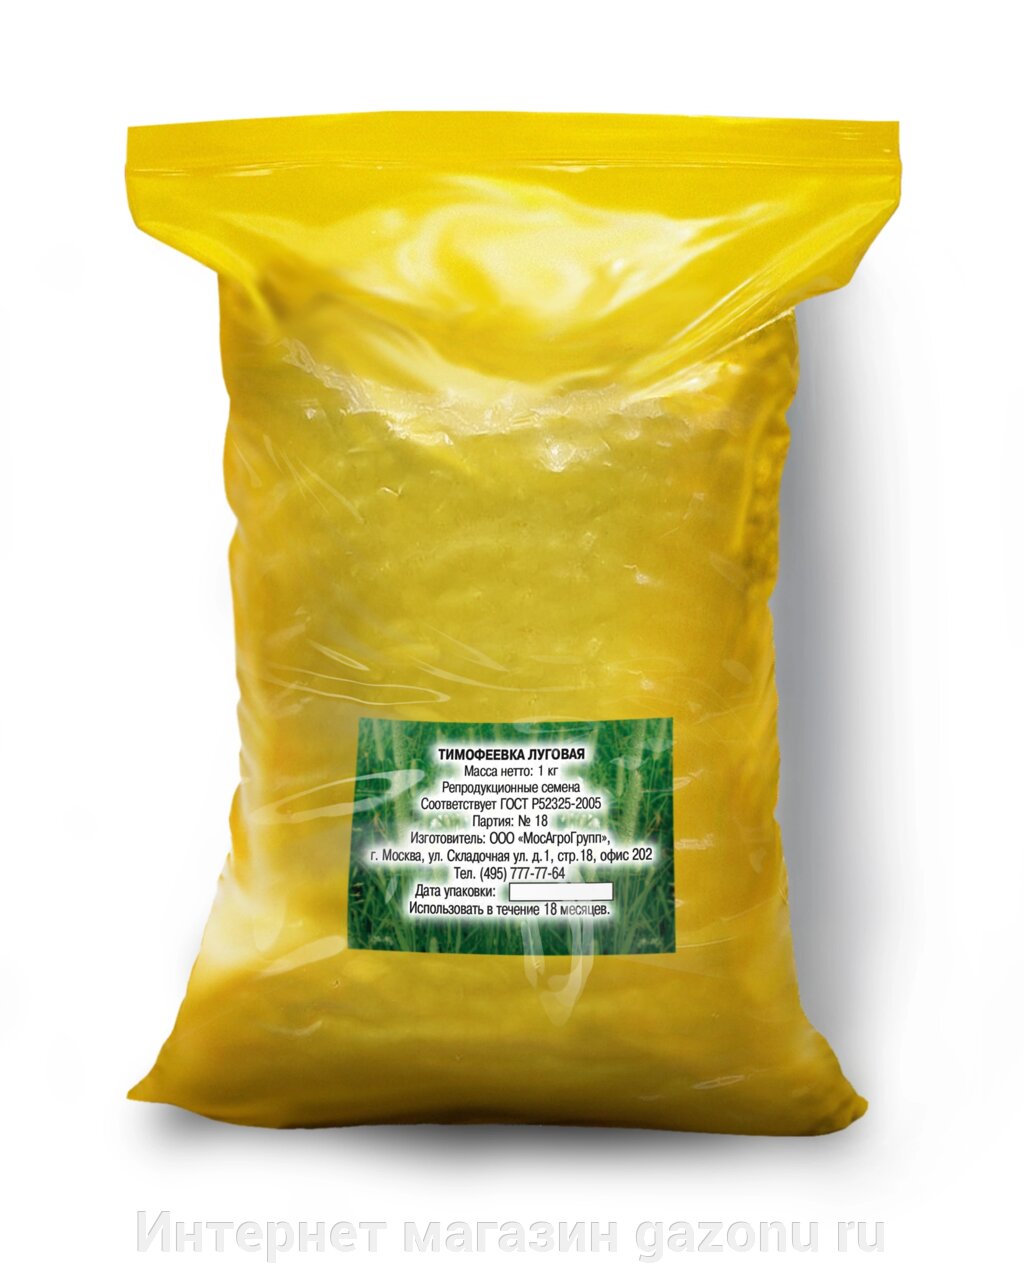 Семена тимофеевки луговой - 1 кг от компании Интернет магазин gazonu ru - фото 1